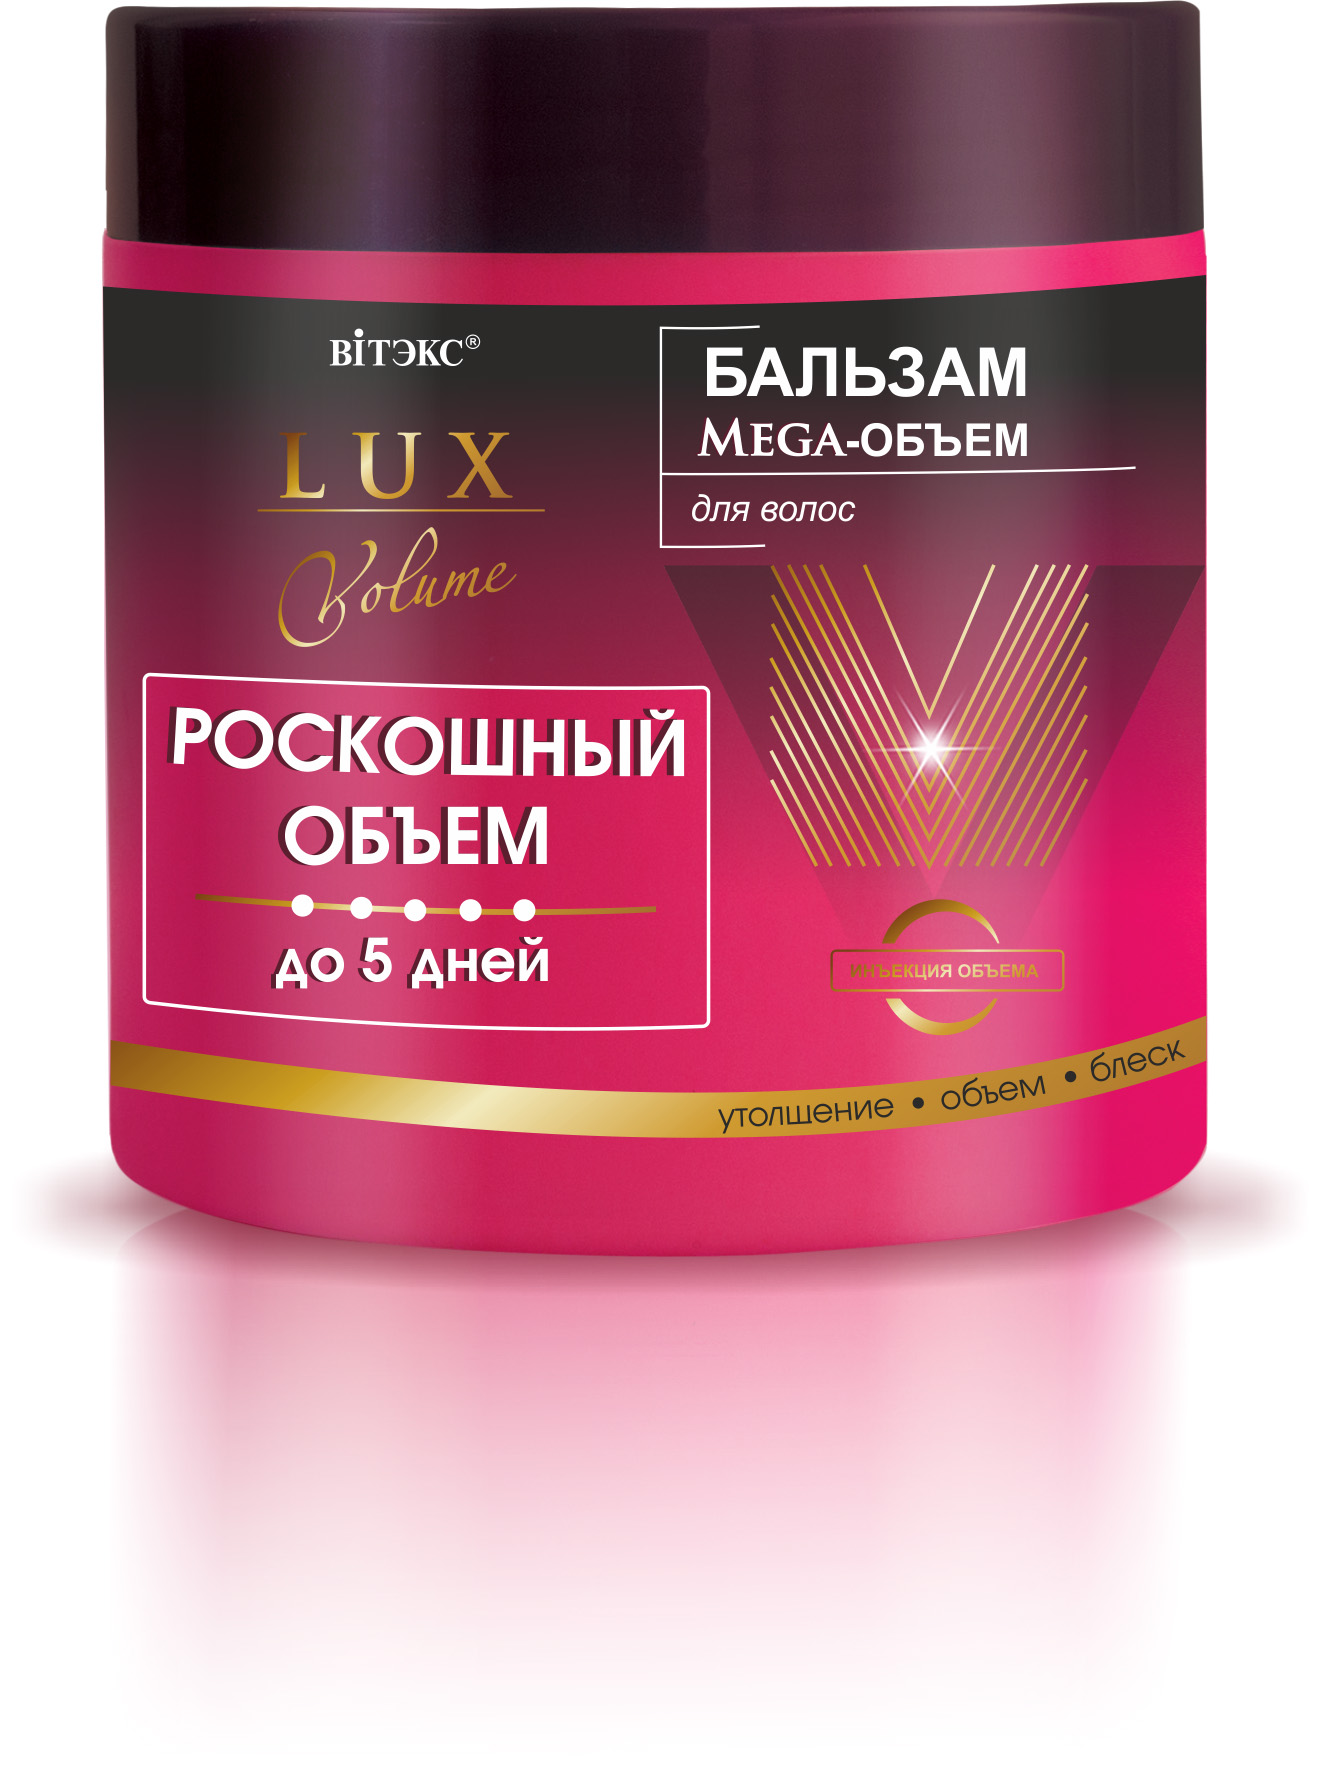 БАЛЬЗАМ Meгa-объем для волос 400мл, Lux Volume